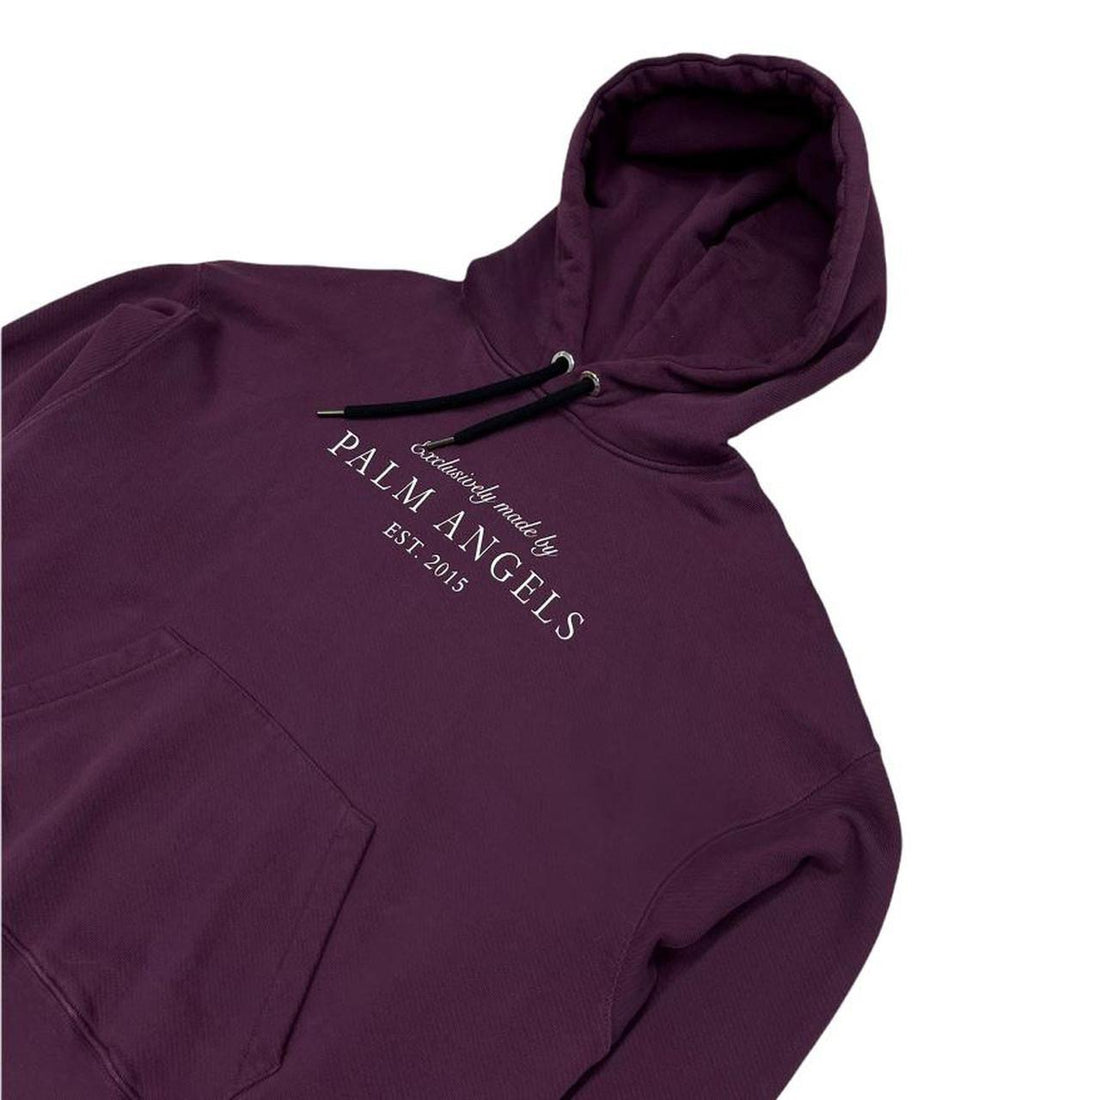 Palm Angels est. 2015 burgundy hoodie